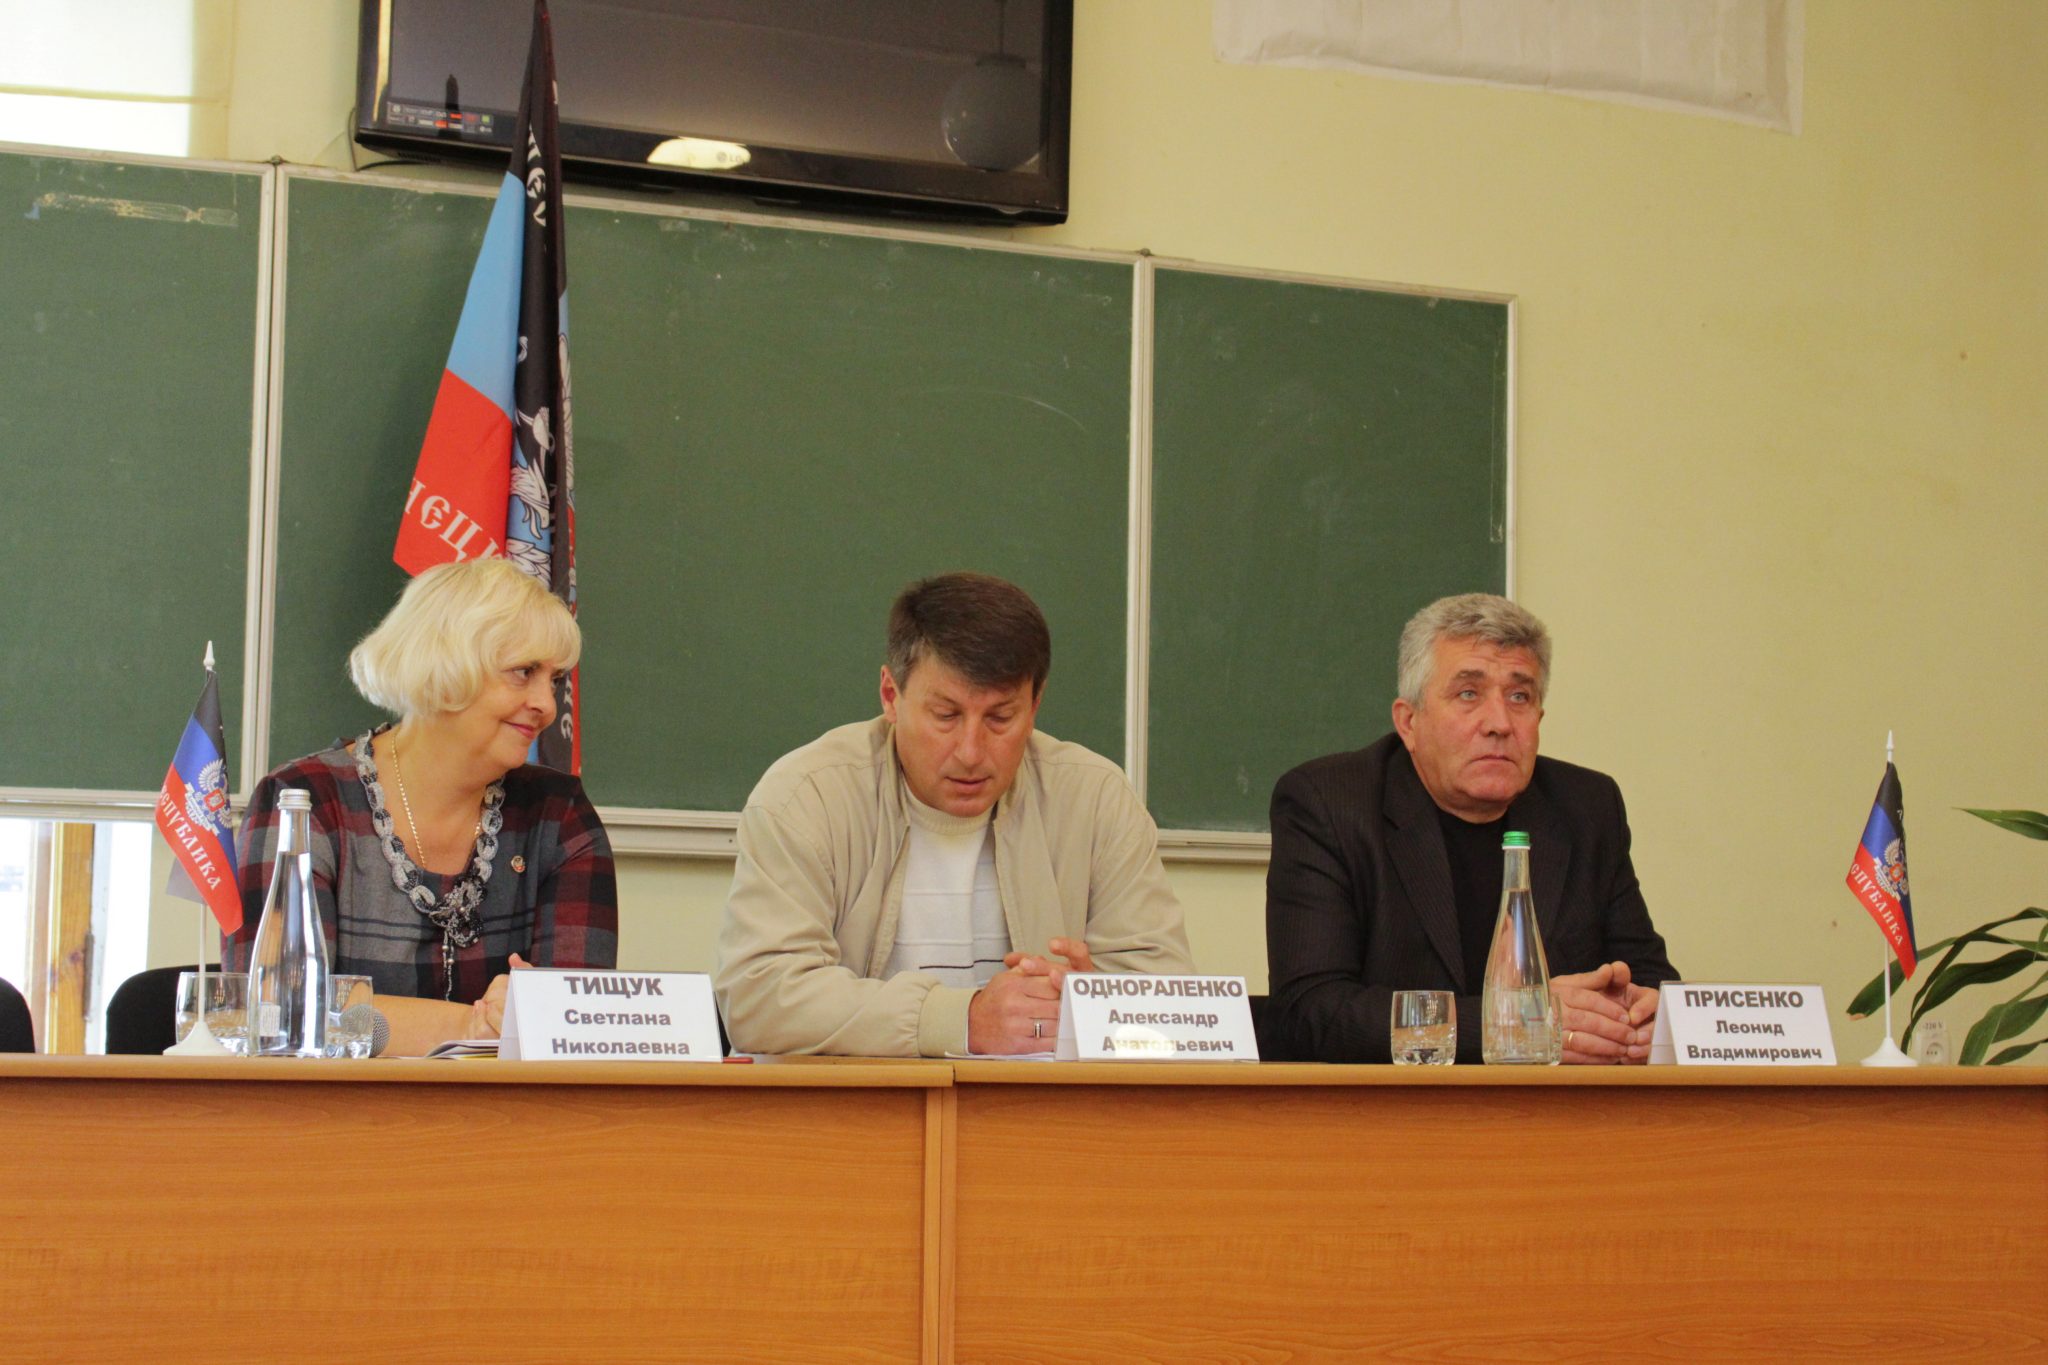 Кандидаты в депутаты провели агитационную встречу с педагогами и студентами Макеевки